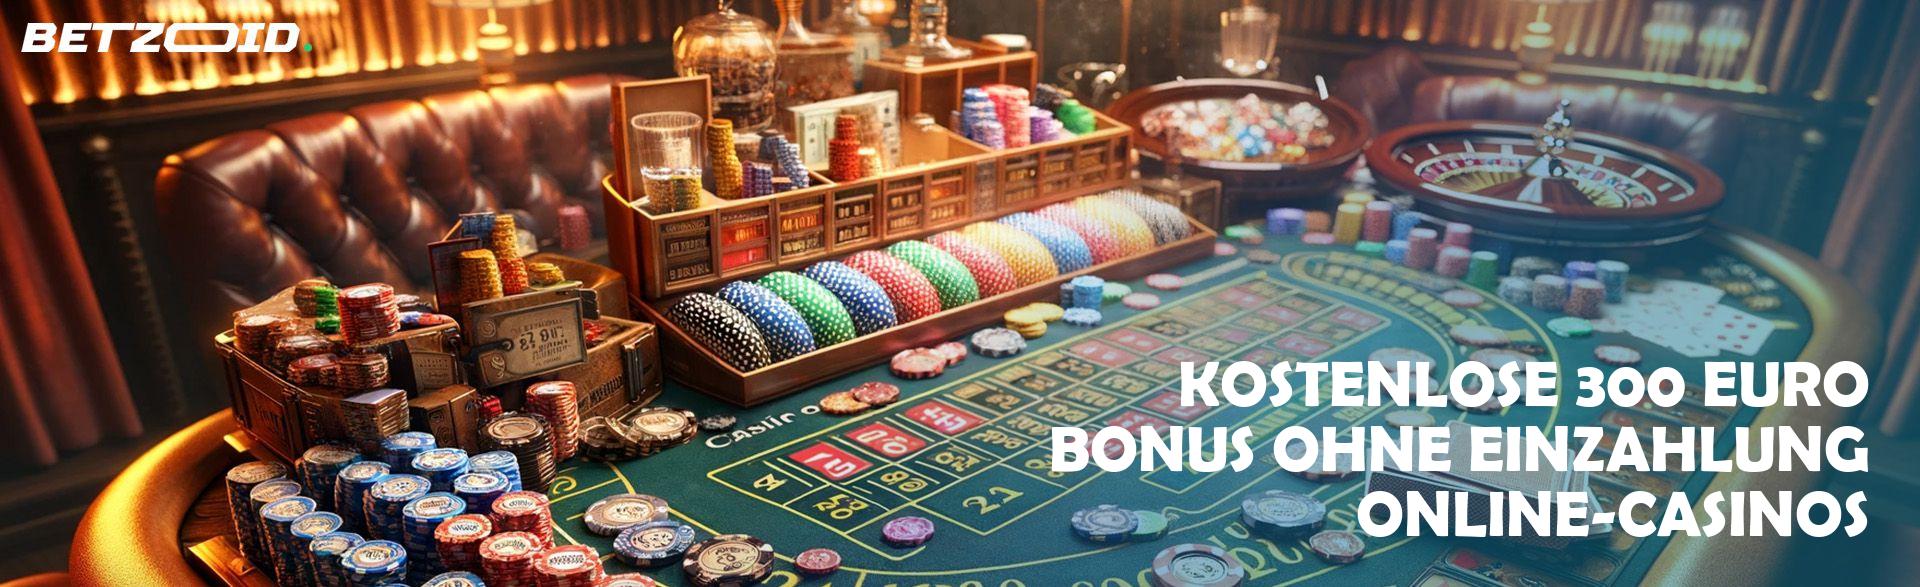 Kostenlose 300 Euro Bonus ohne Einzahlung Online-Casinos.